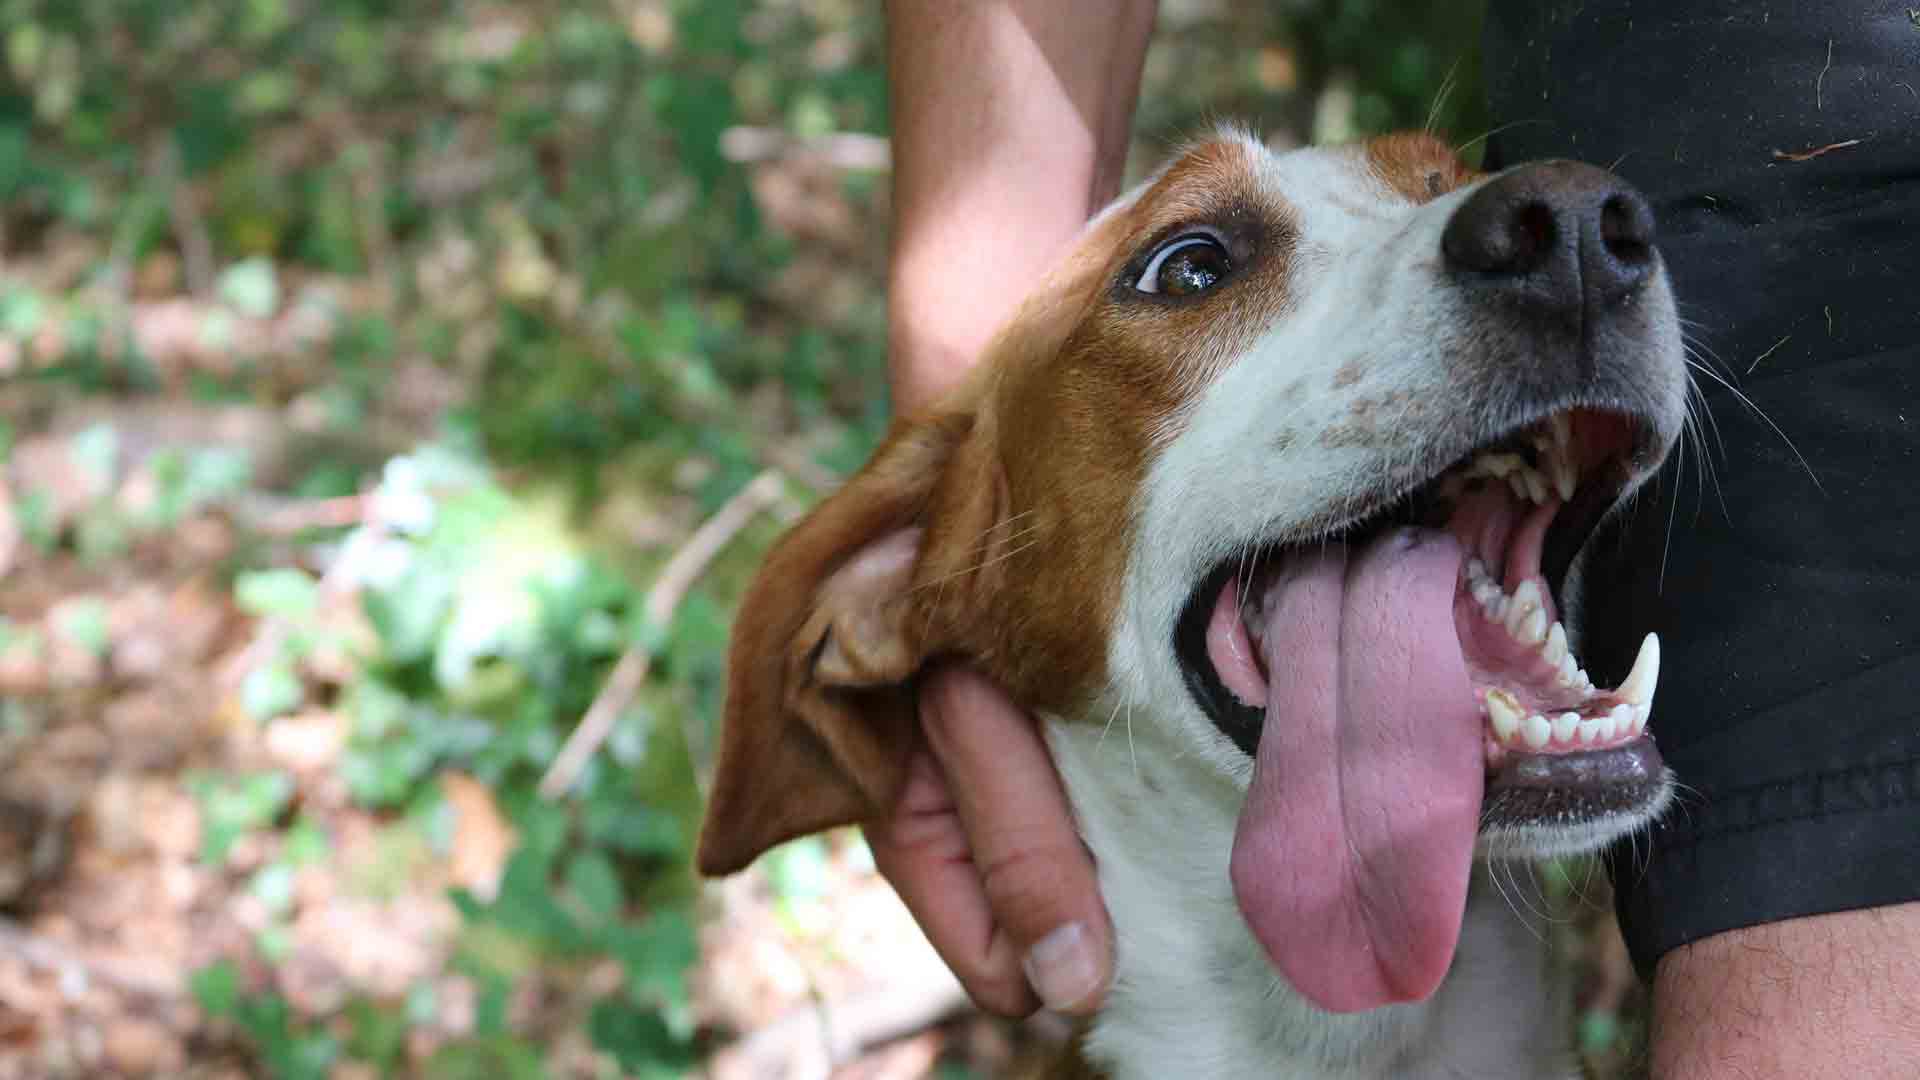 SOS: Primeros auxilios para perros